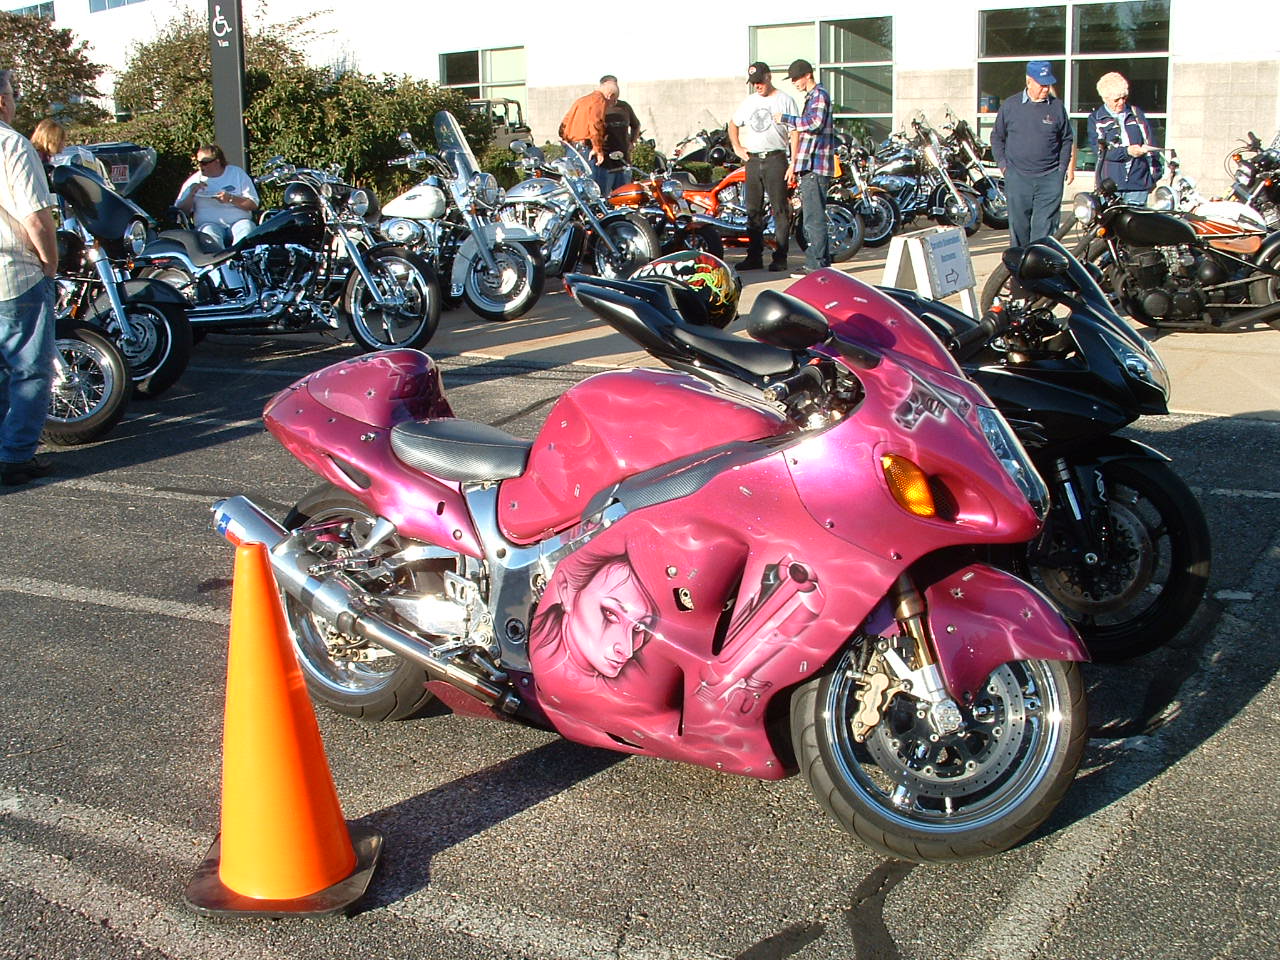 http://2.bp.blogspot.com/_p_3mlOIkFeA/TJTK_pxpaNI/AAAAAAAAEig/KvMDvDbAmuI/s1600/pink%2Bmotorcycle.jpg